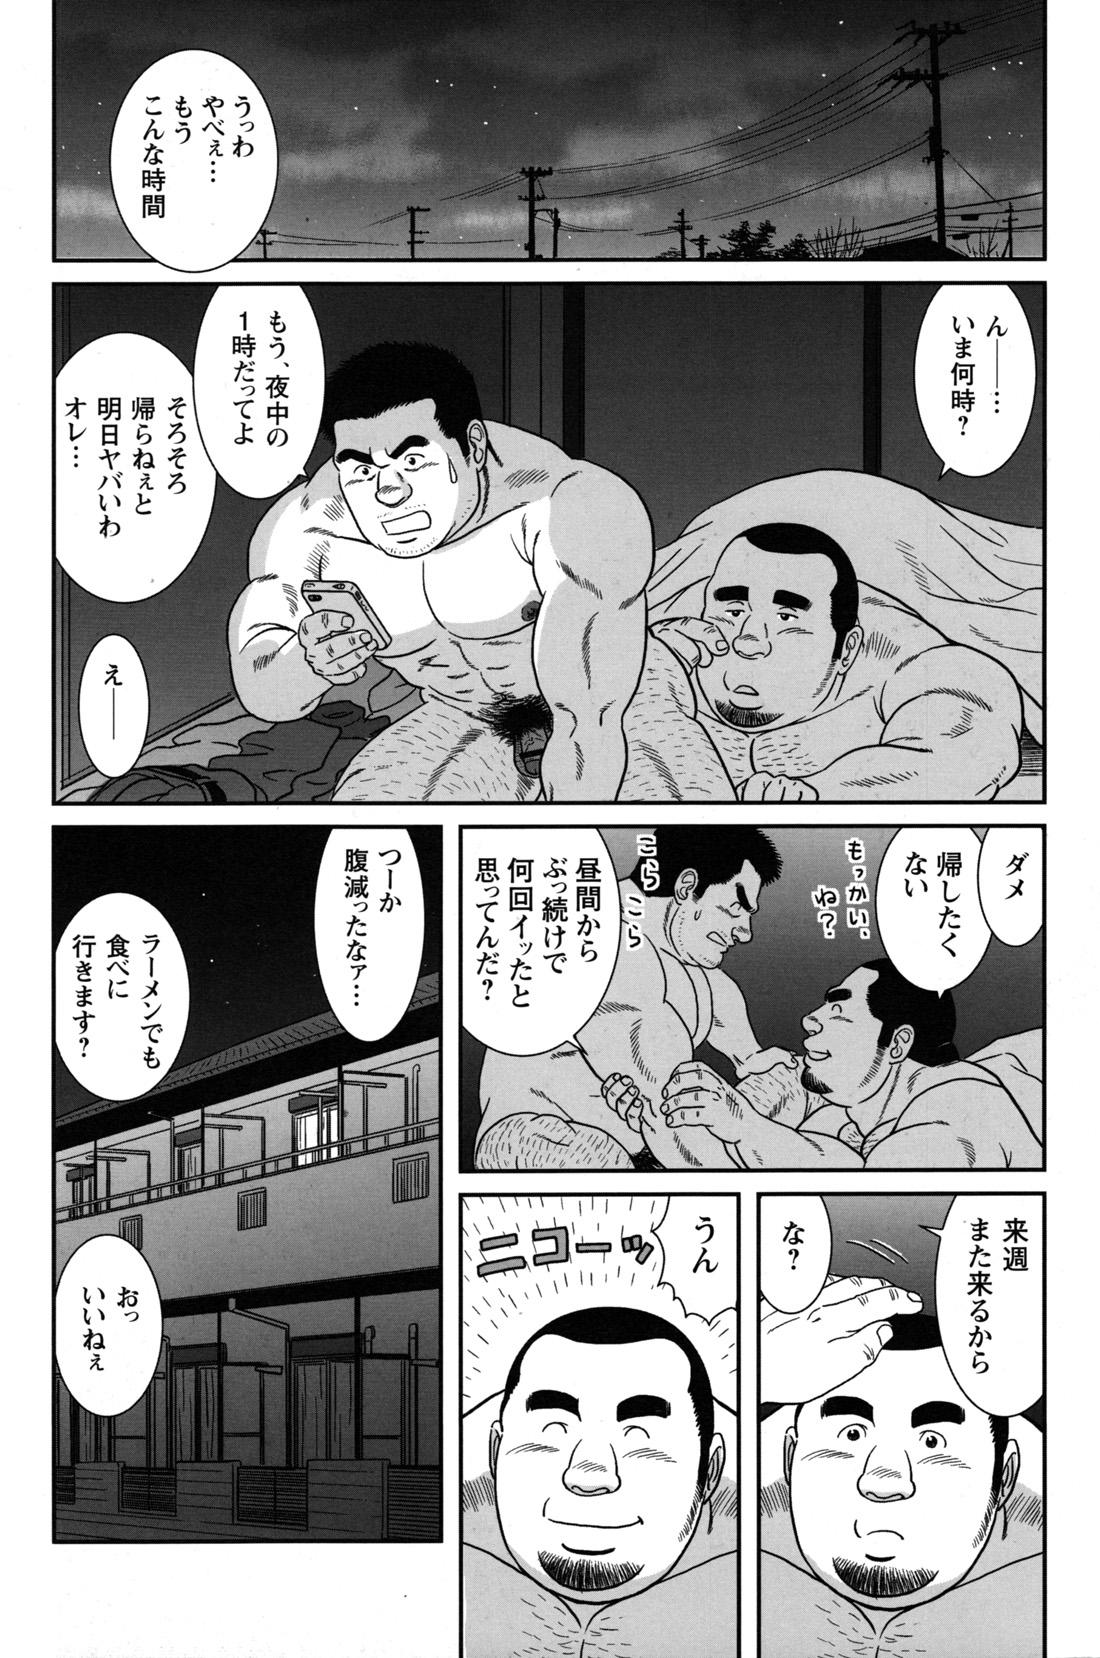 Comic G-men Gaho No.09 Gacchibi Zeme 101